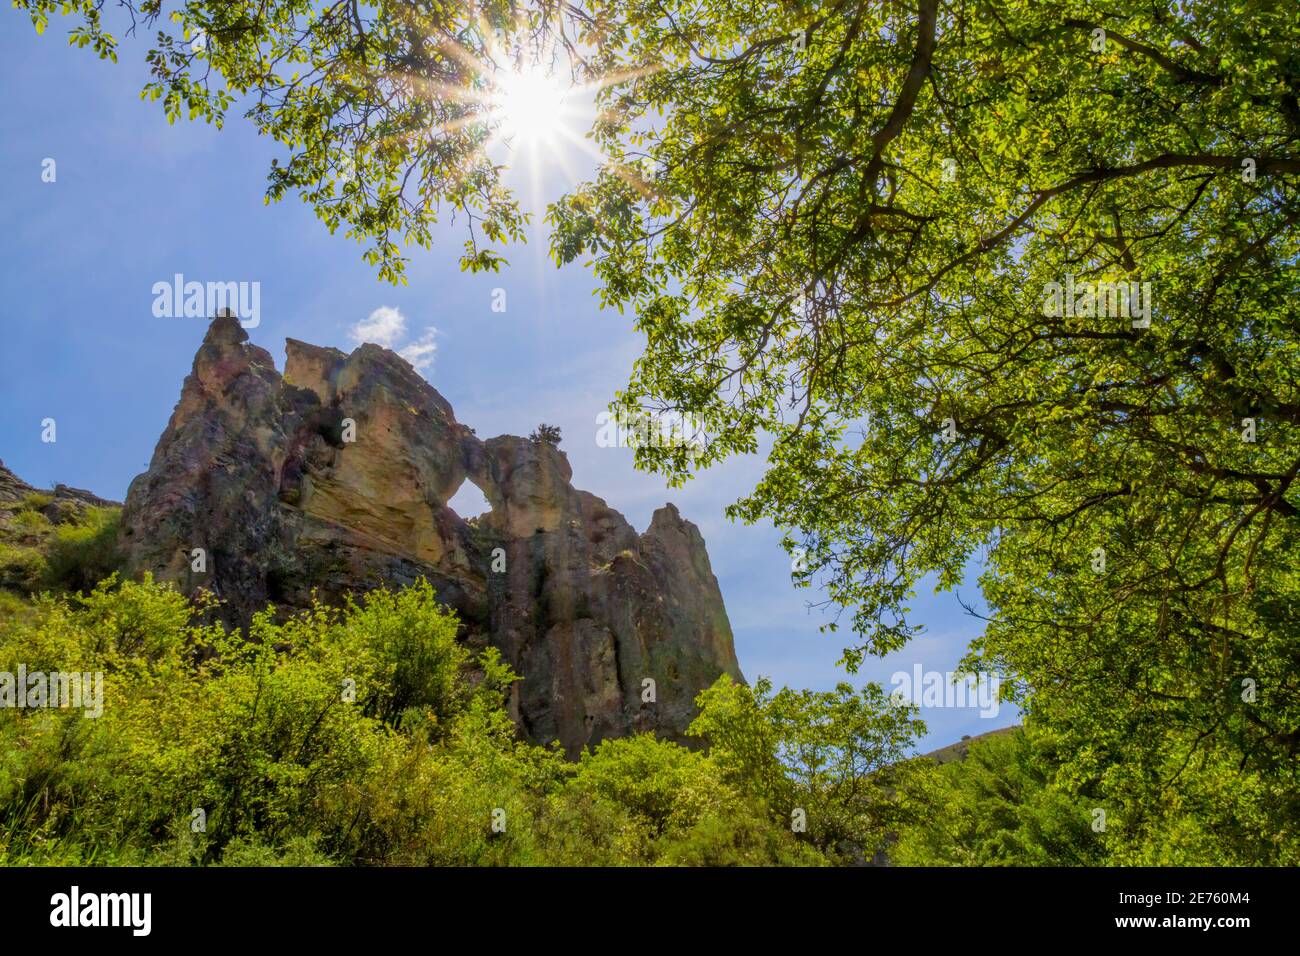 Montagna rocciosa con un buco nel mezzo visto attraverso alcuni alberi, nella gola Peregrina en el Parque Natural del Rio Dulce, Guadalajara, Spagna Foto Stock